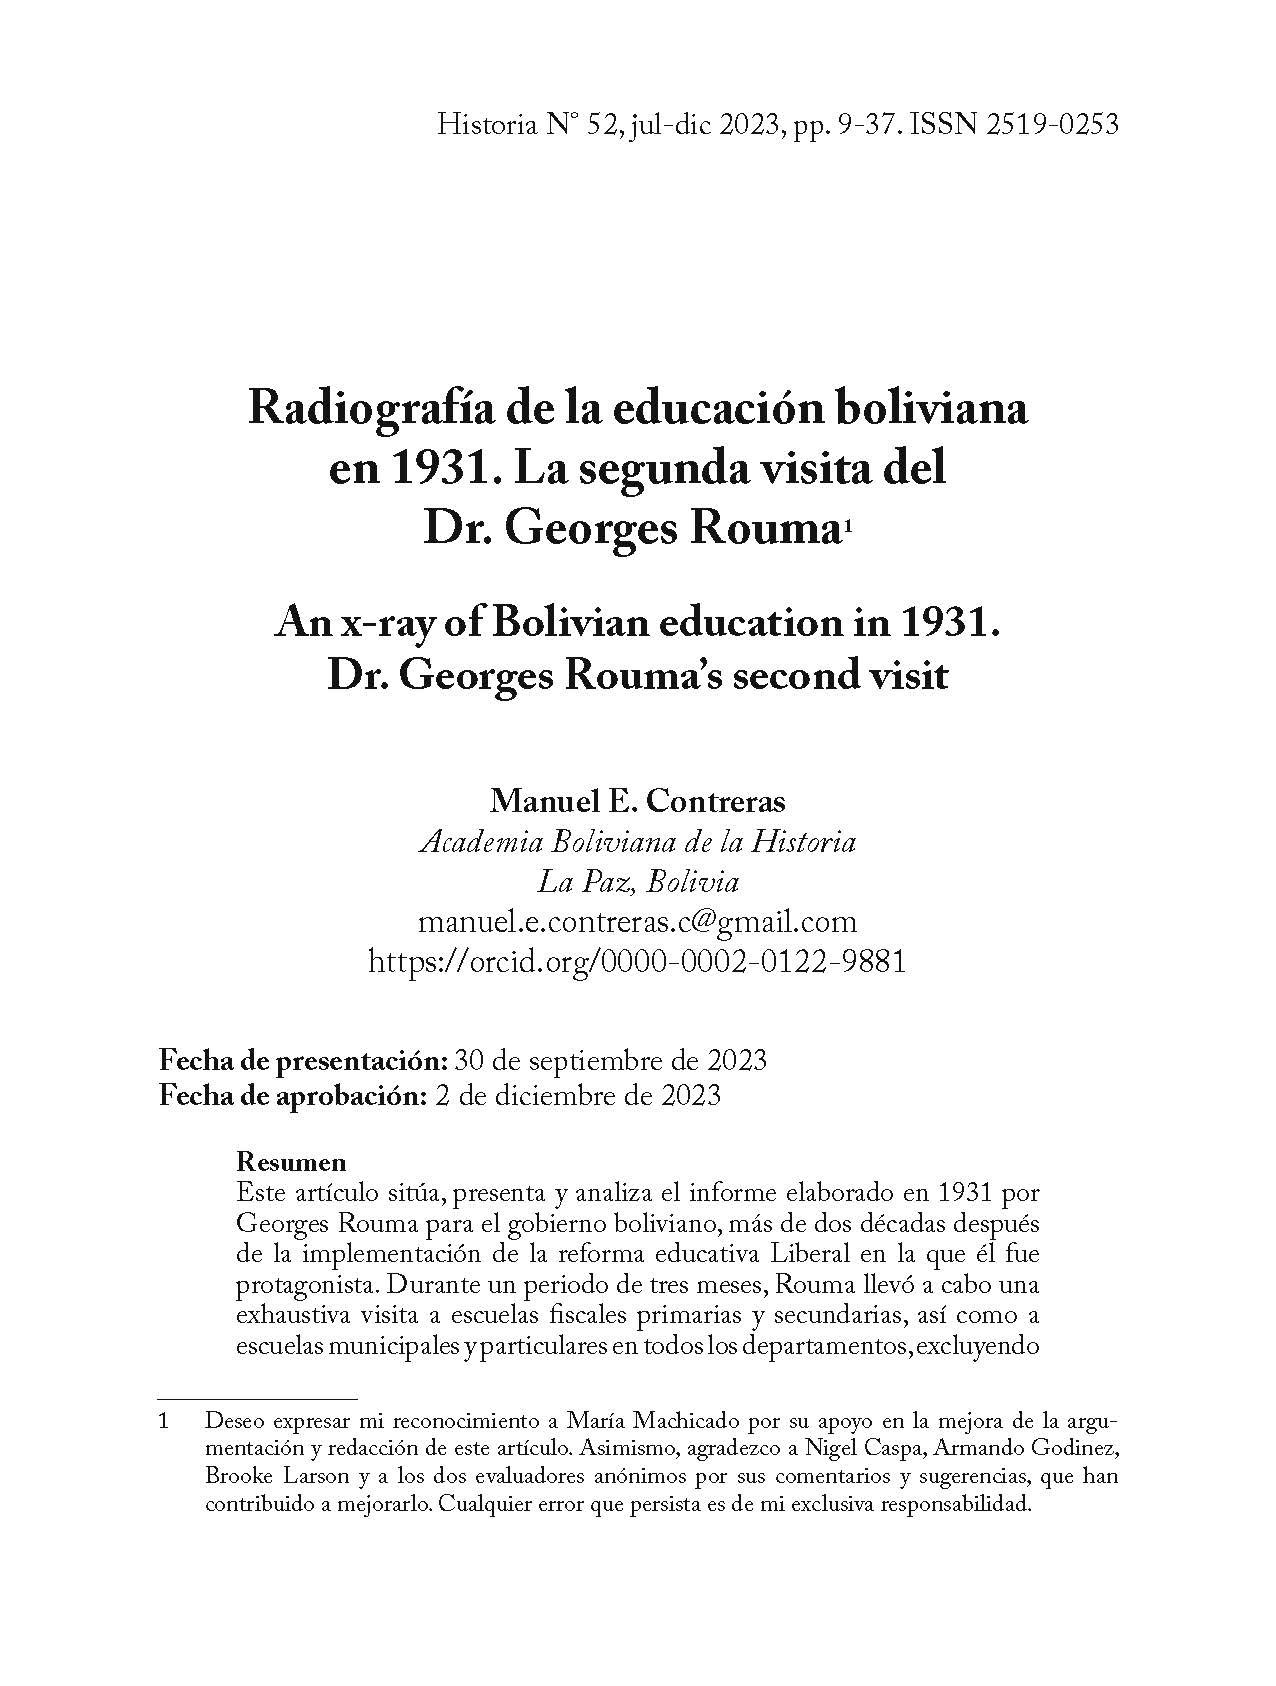 Radiografía de la educación boliviana en 1931. La segunda visita del Dr. Georges Rouma